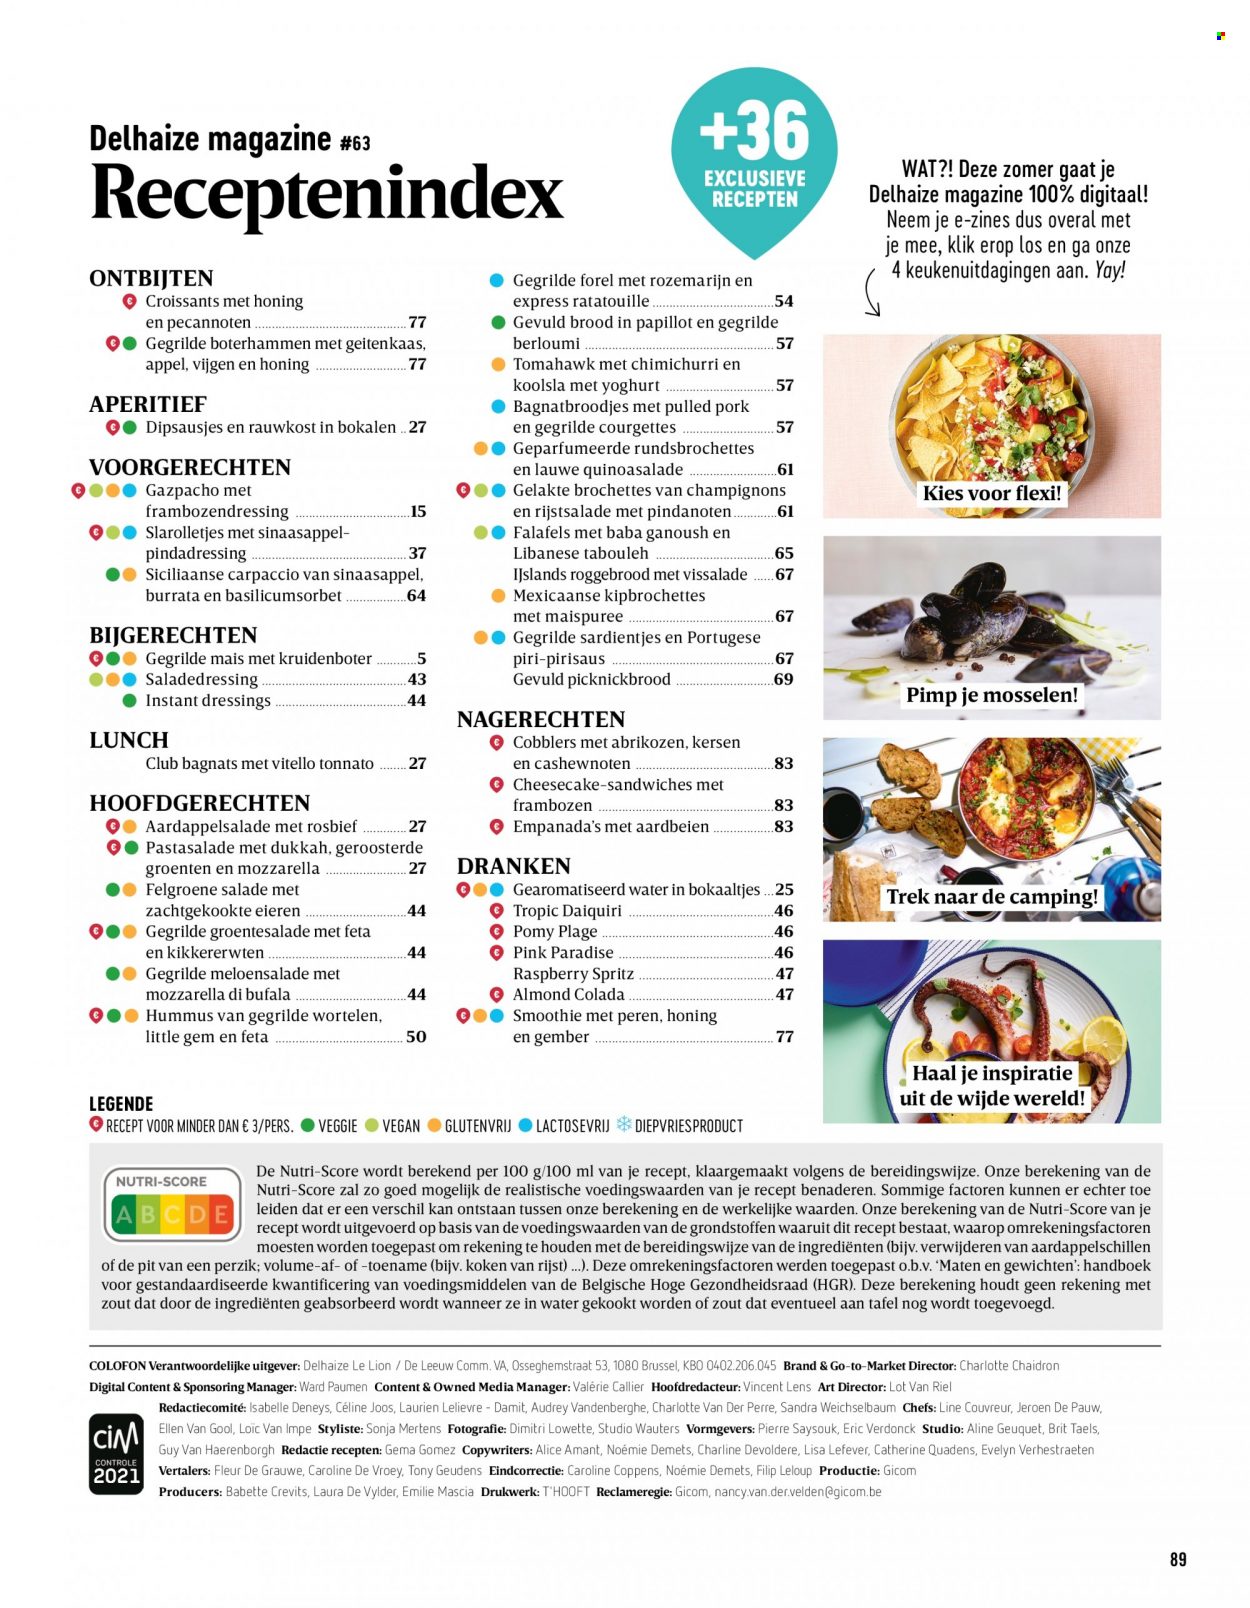 thumbnail - Catalogue Delhaize - Produits soldés - salade, courgette, croissant, champignon, carpaccio, ratatouille, gazpacho, féta, fromage, mozzarella, burrata, Lion, smoothie, Spritz. Page 89.